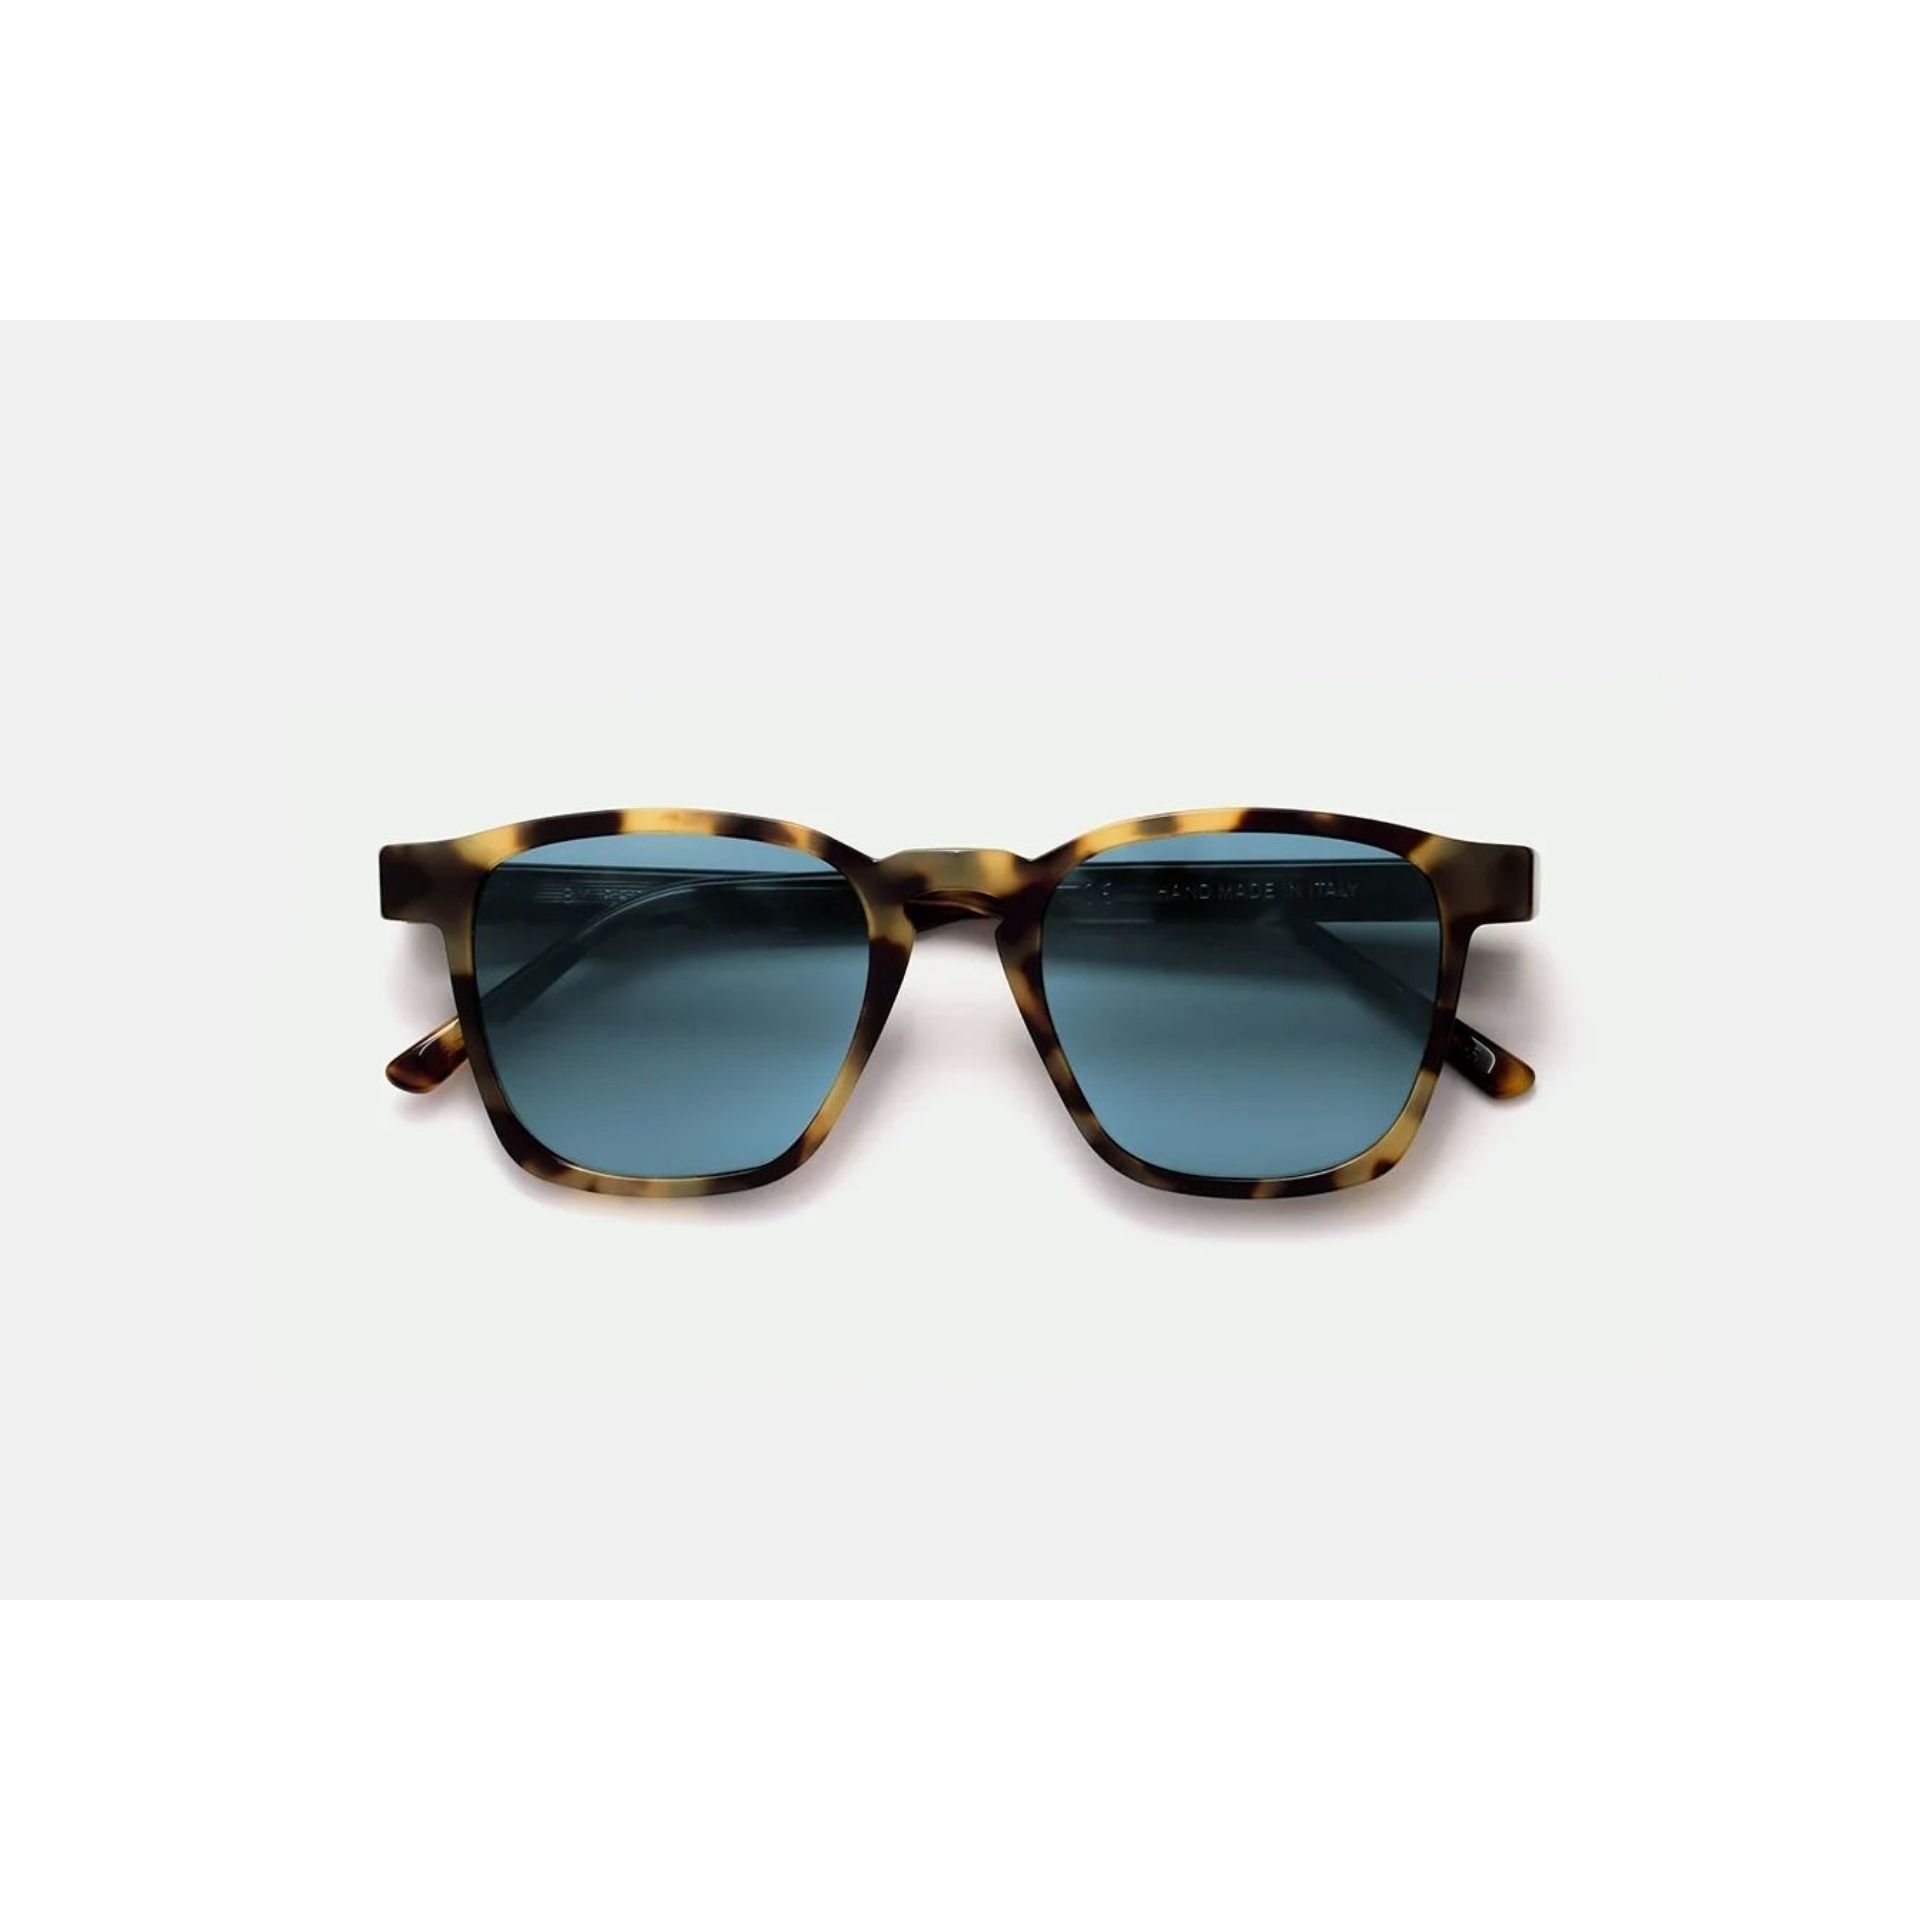 UNICO CHEETAH Square Sunglasses V8F - size 50